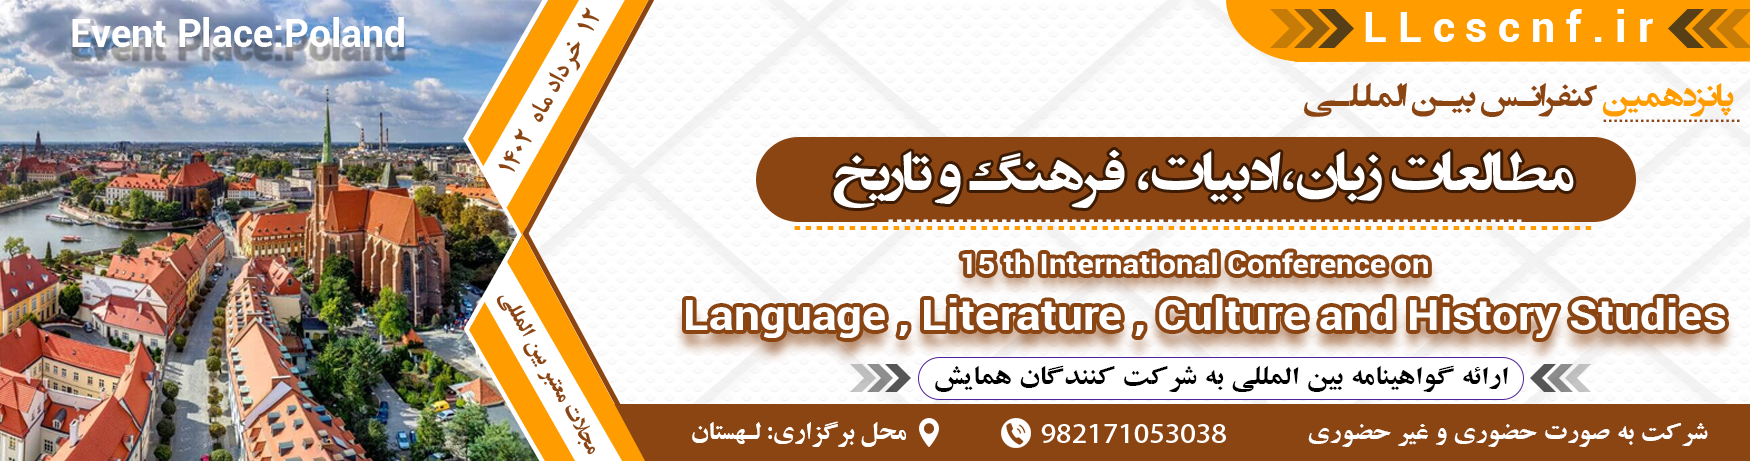 کنفرانس بین المللی مطالعات زبان،ادبیات، فرهنگ و تاریخ	